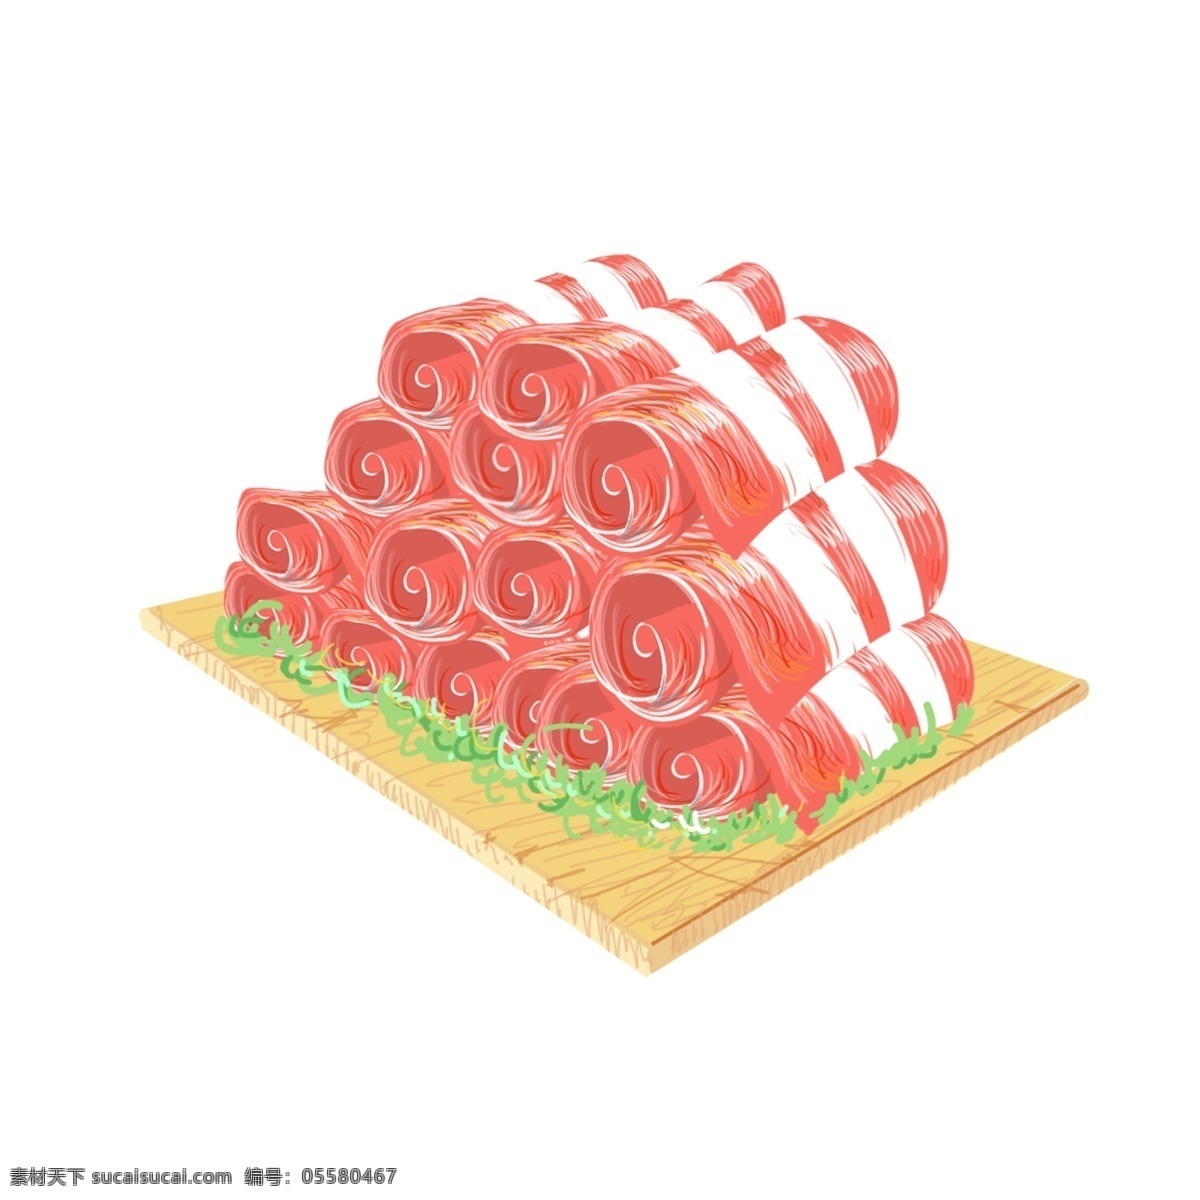 年货 羊肉 卷 手绘 插画 年货羊肉卷 红色的羊肉卷 新鲜的羊肉卷 美味的羊肉卷 手绘羊肉卷 卡通羊肉卷